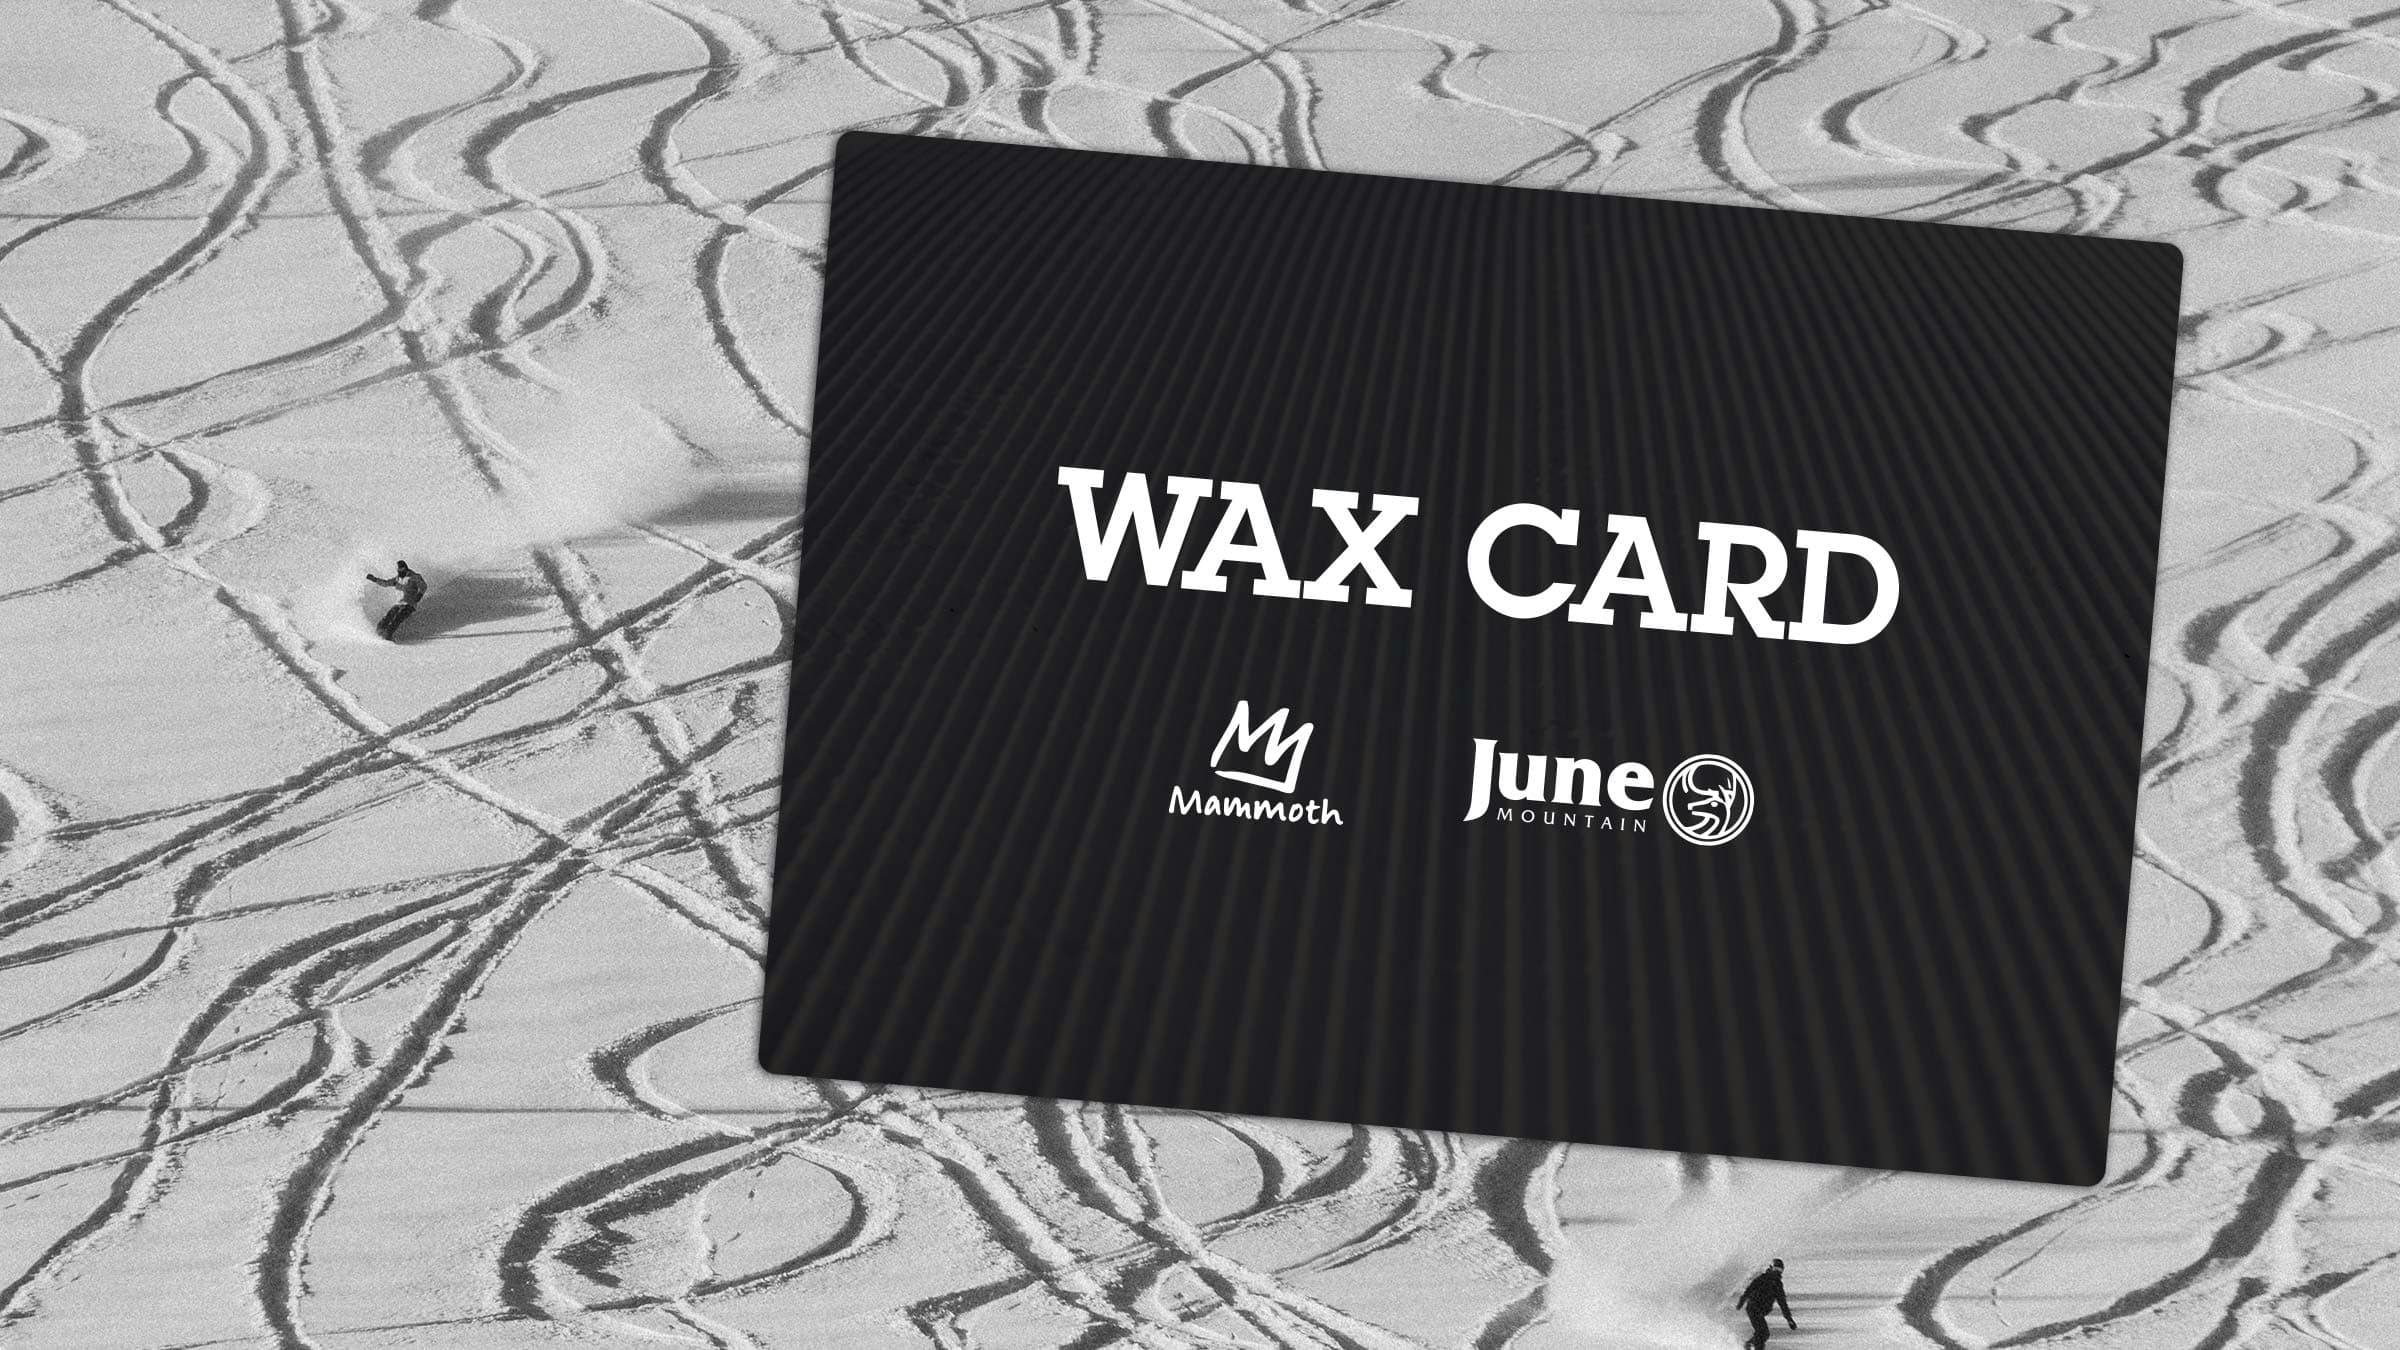 Wax Card media